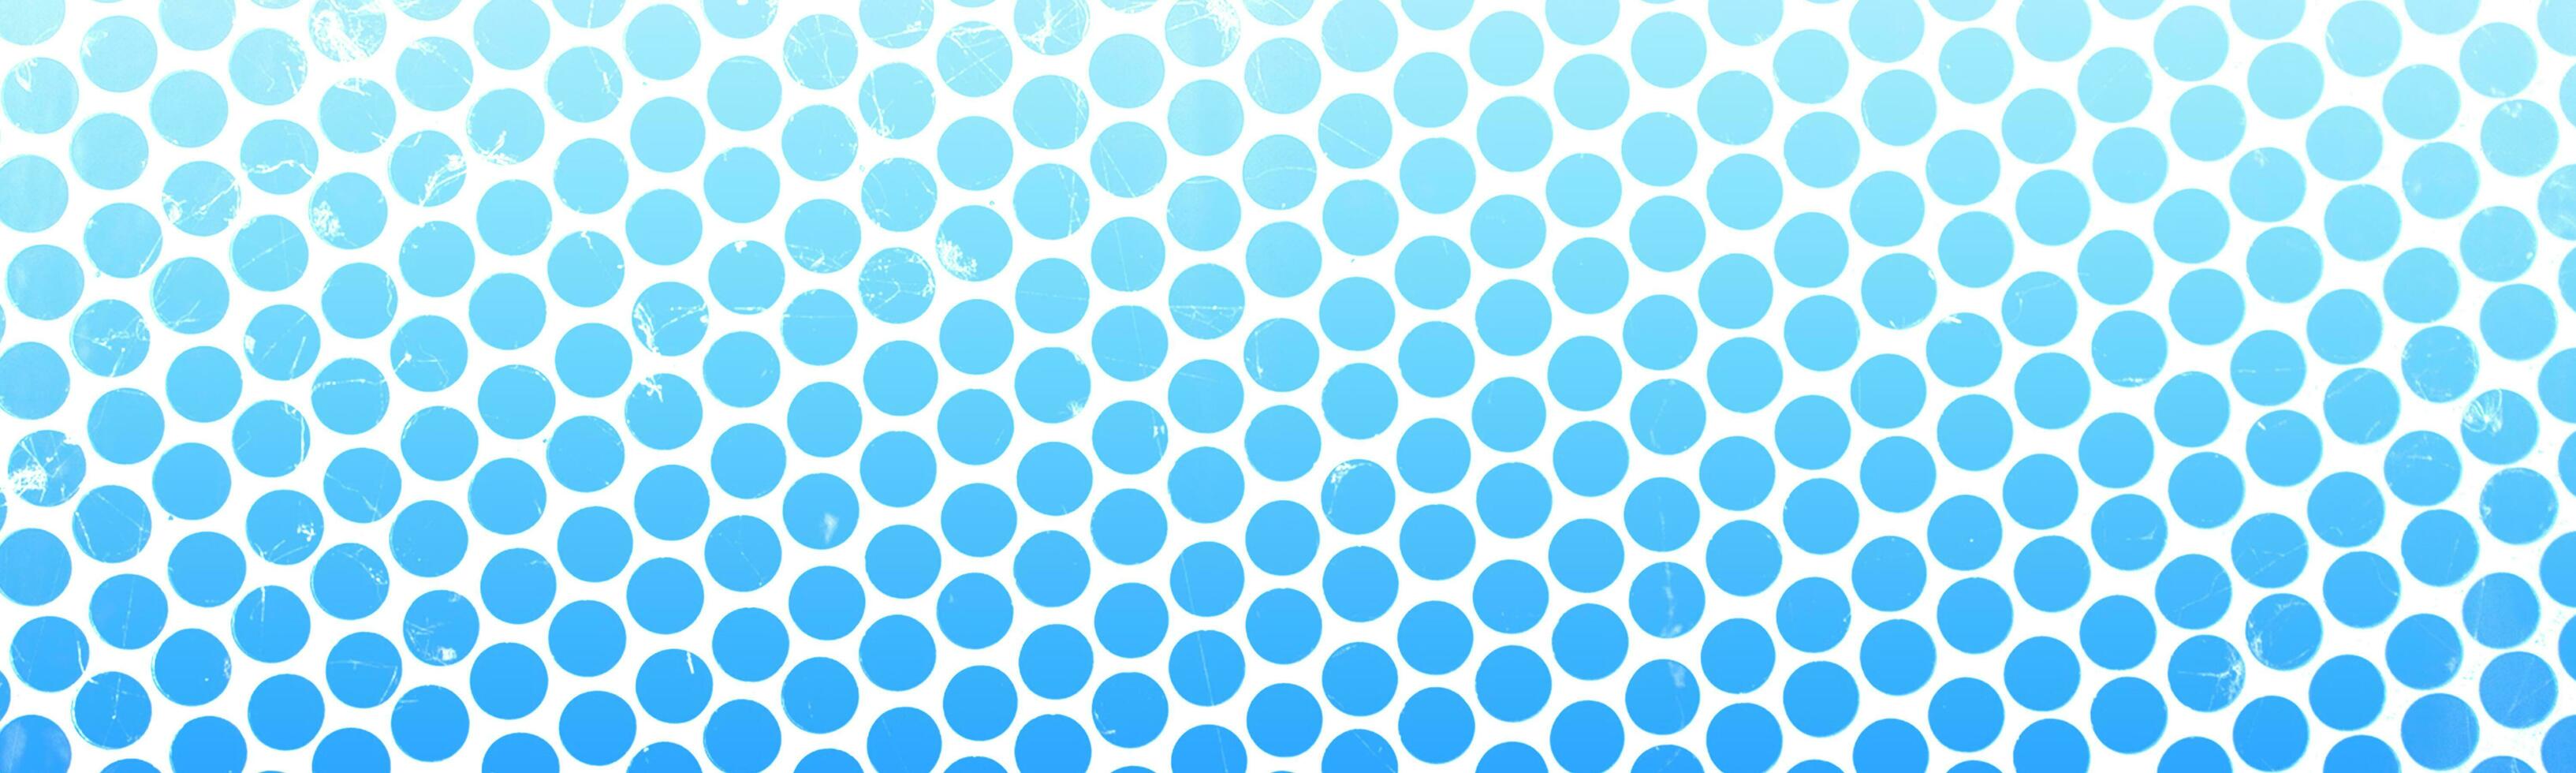 azul e branco abstrato fundo com uma padronizar foto